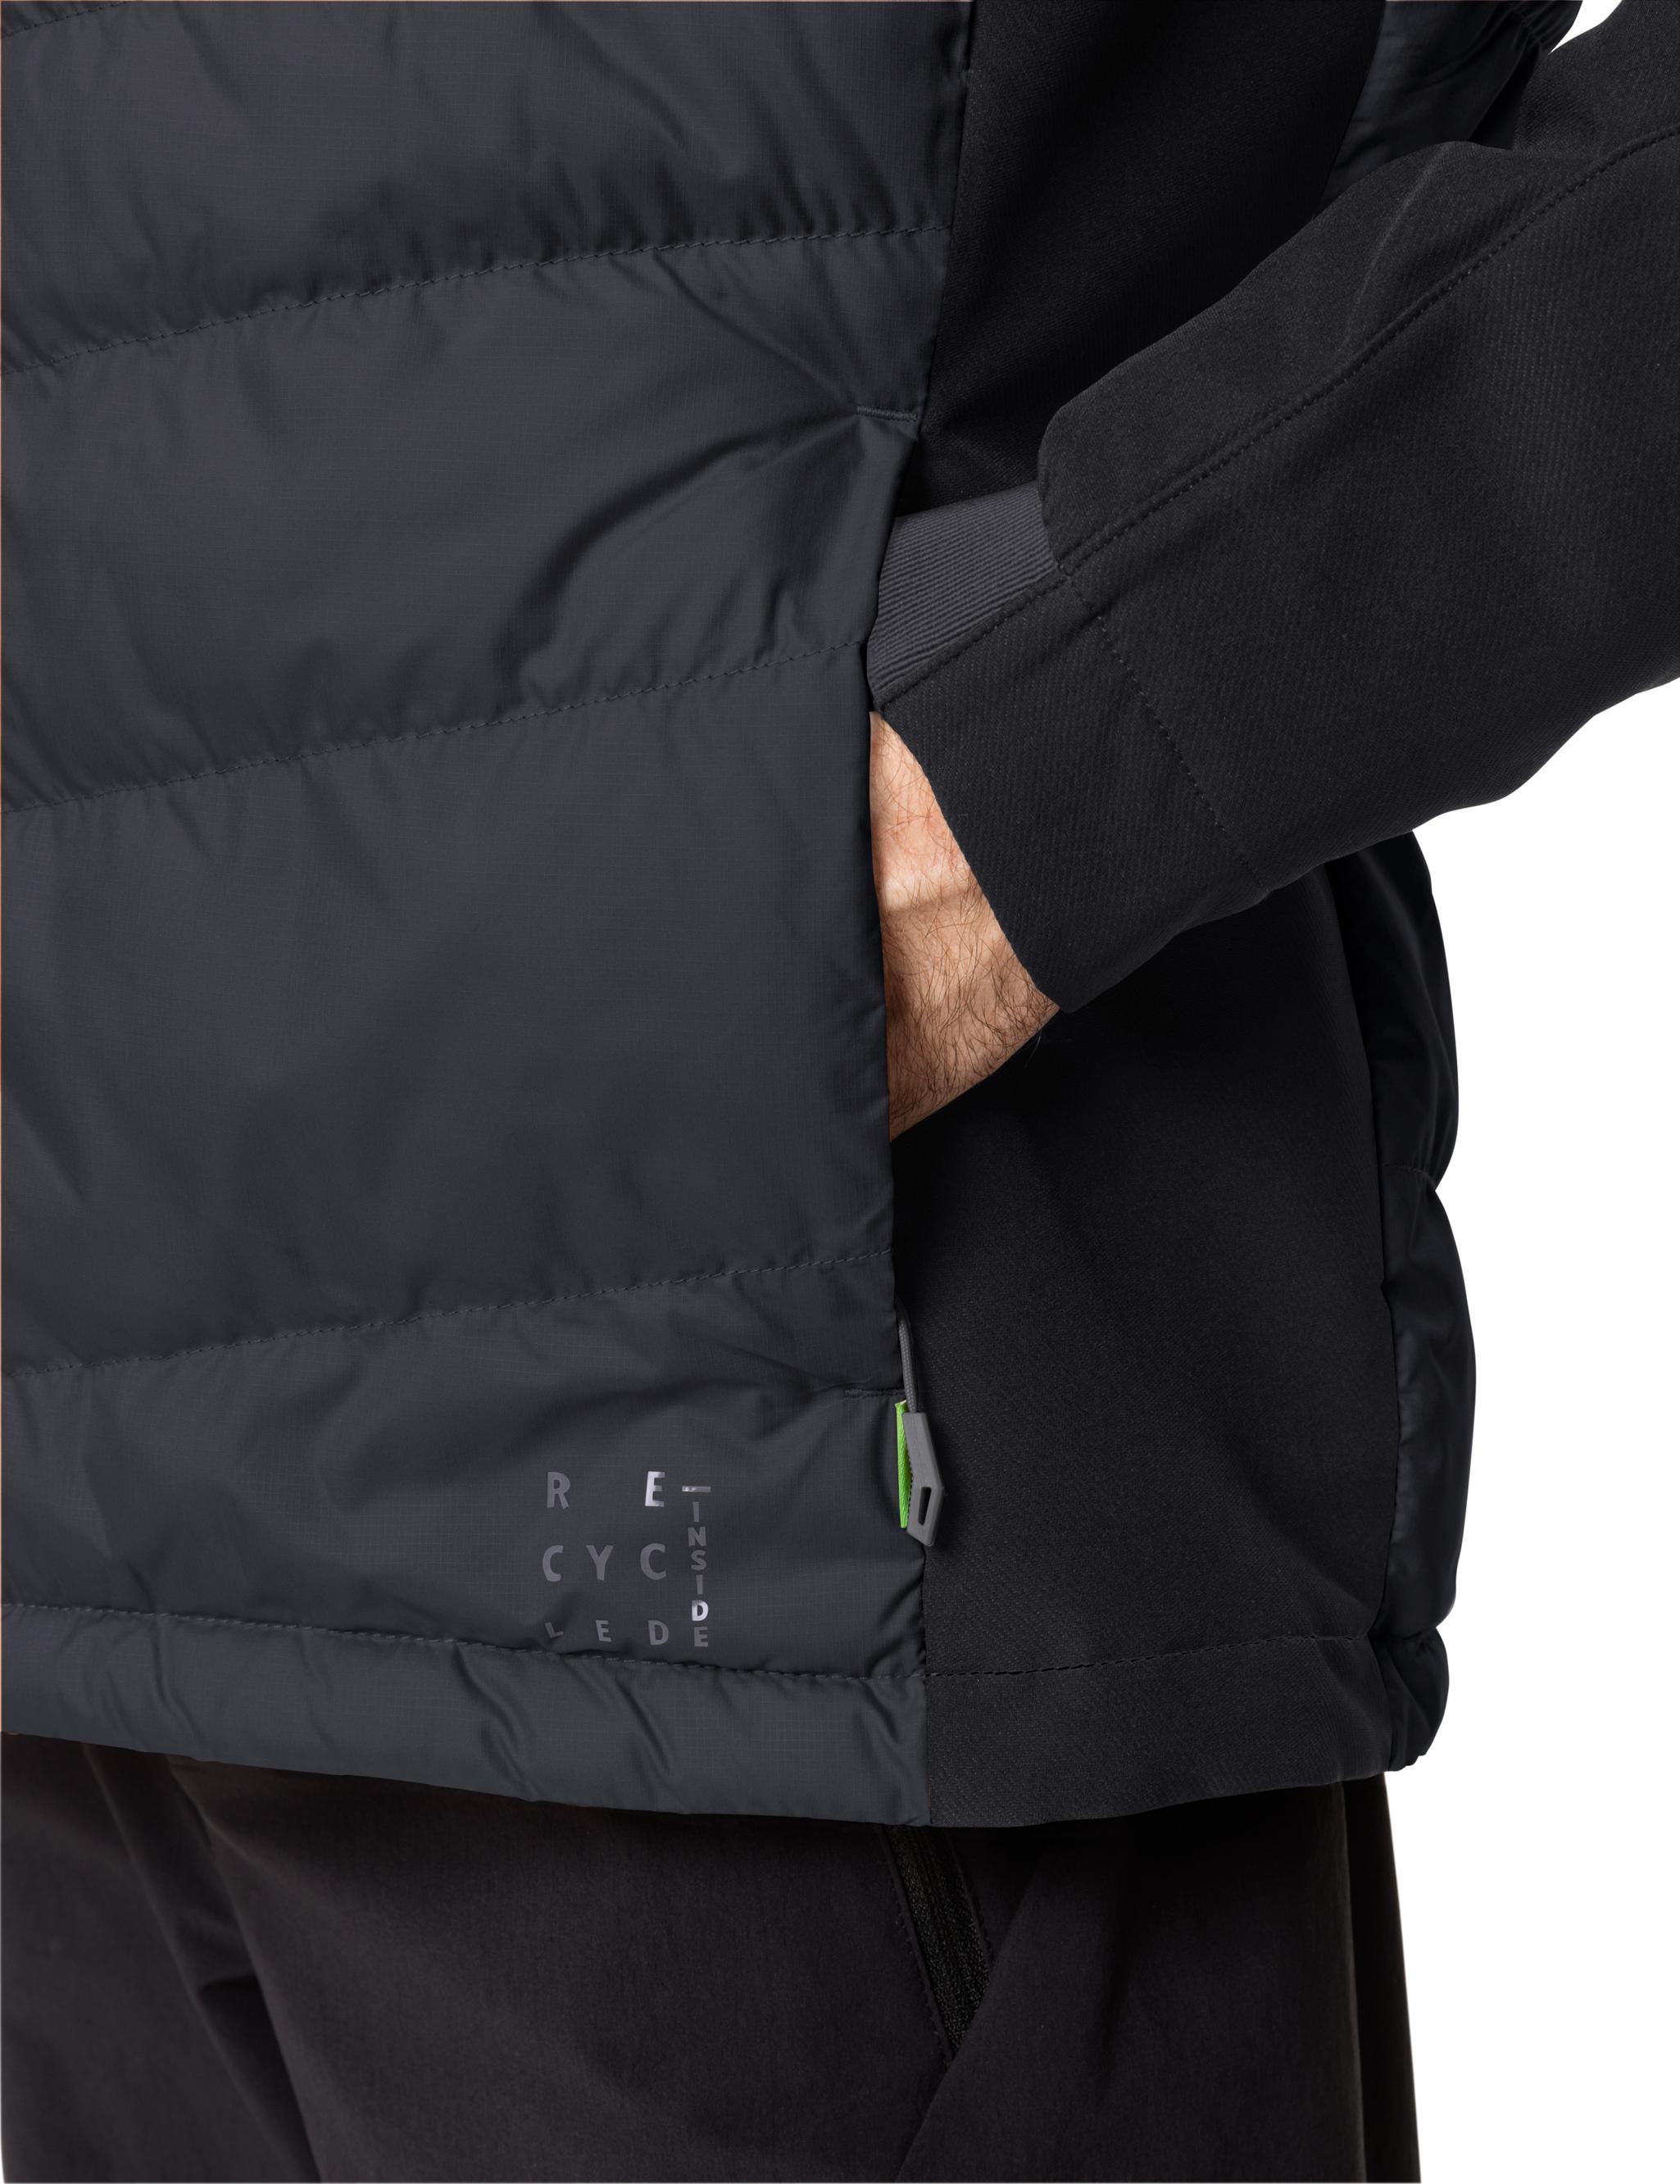 Jacket Outdoorjacke VAUDE im Shop Herren black Elope SportScheck Men\'s von Hybrid Online kaufen